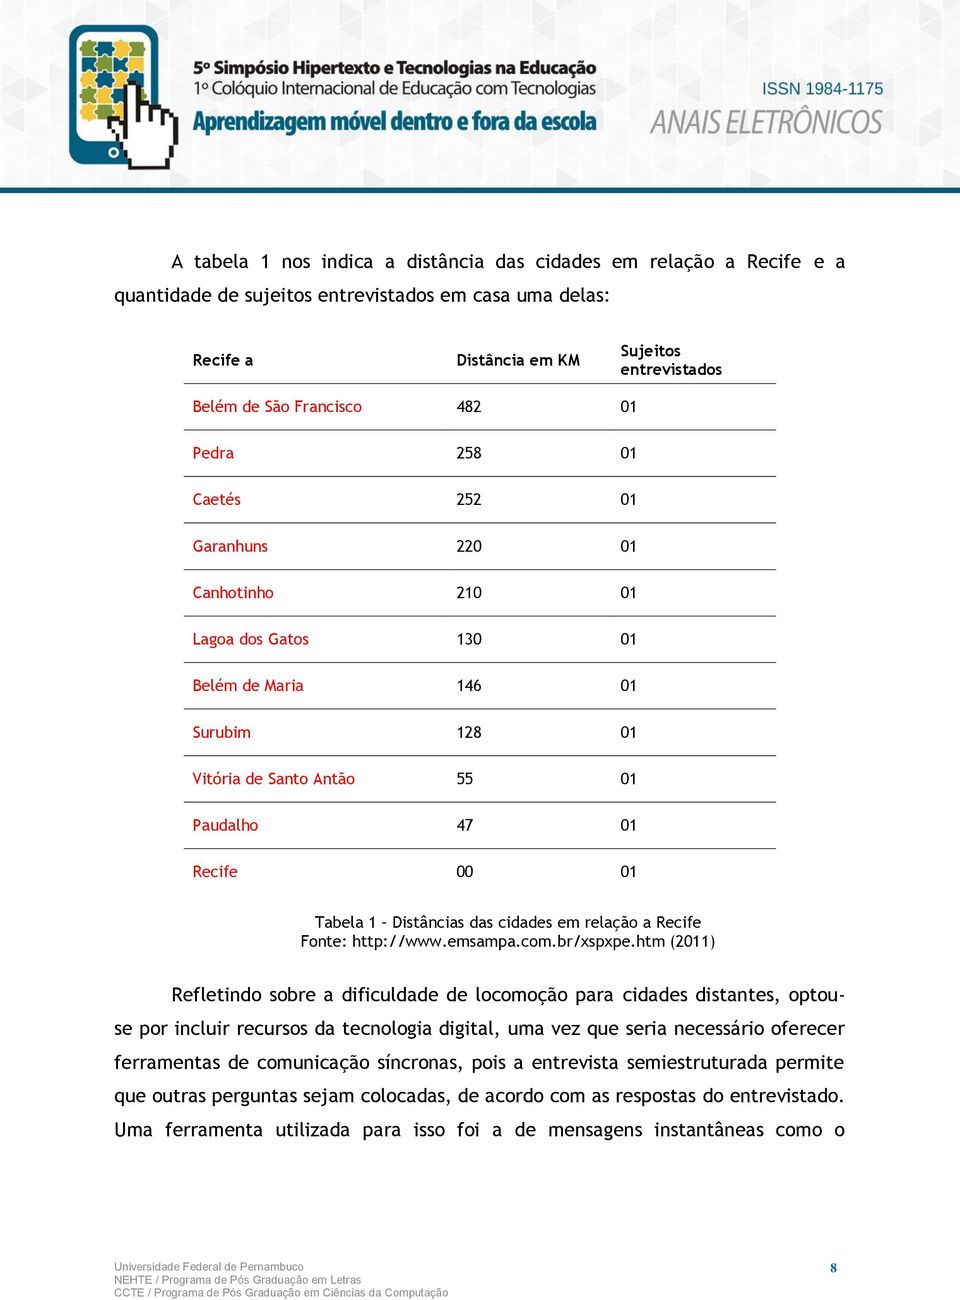 Distâncias das cidades em relação a Recife Fonte: http://www.emsampa.com.br/xspxpe.